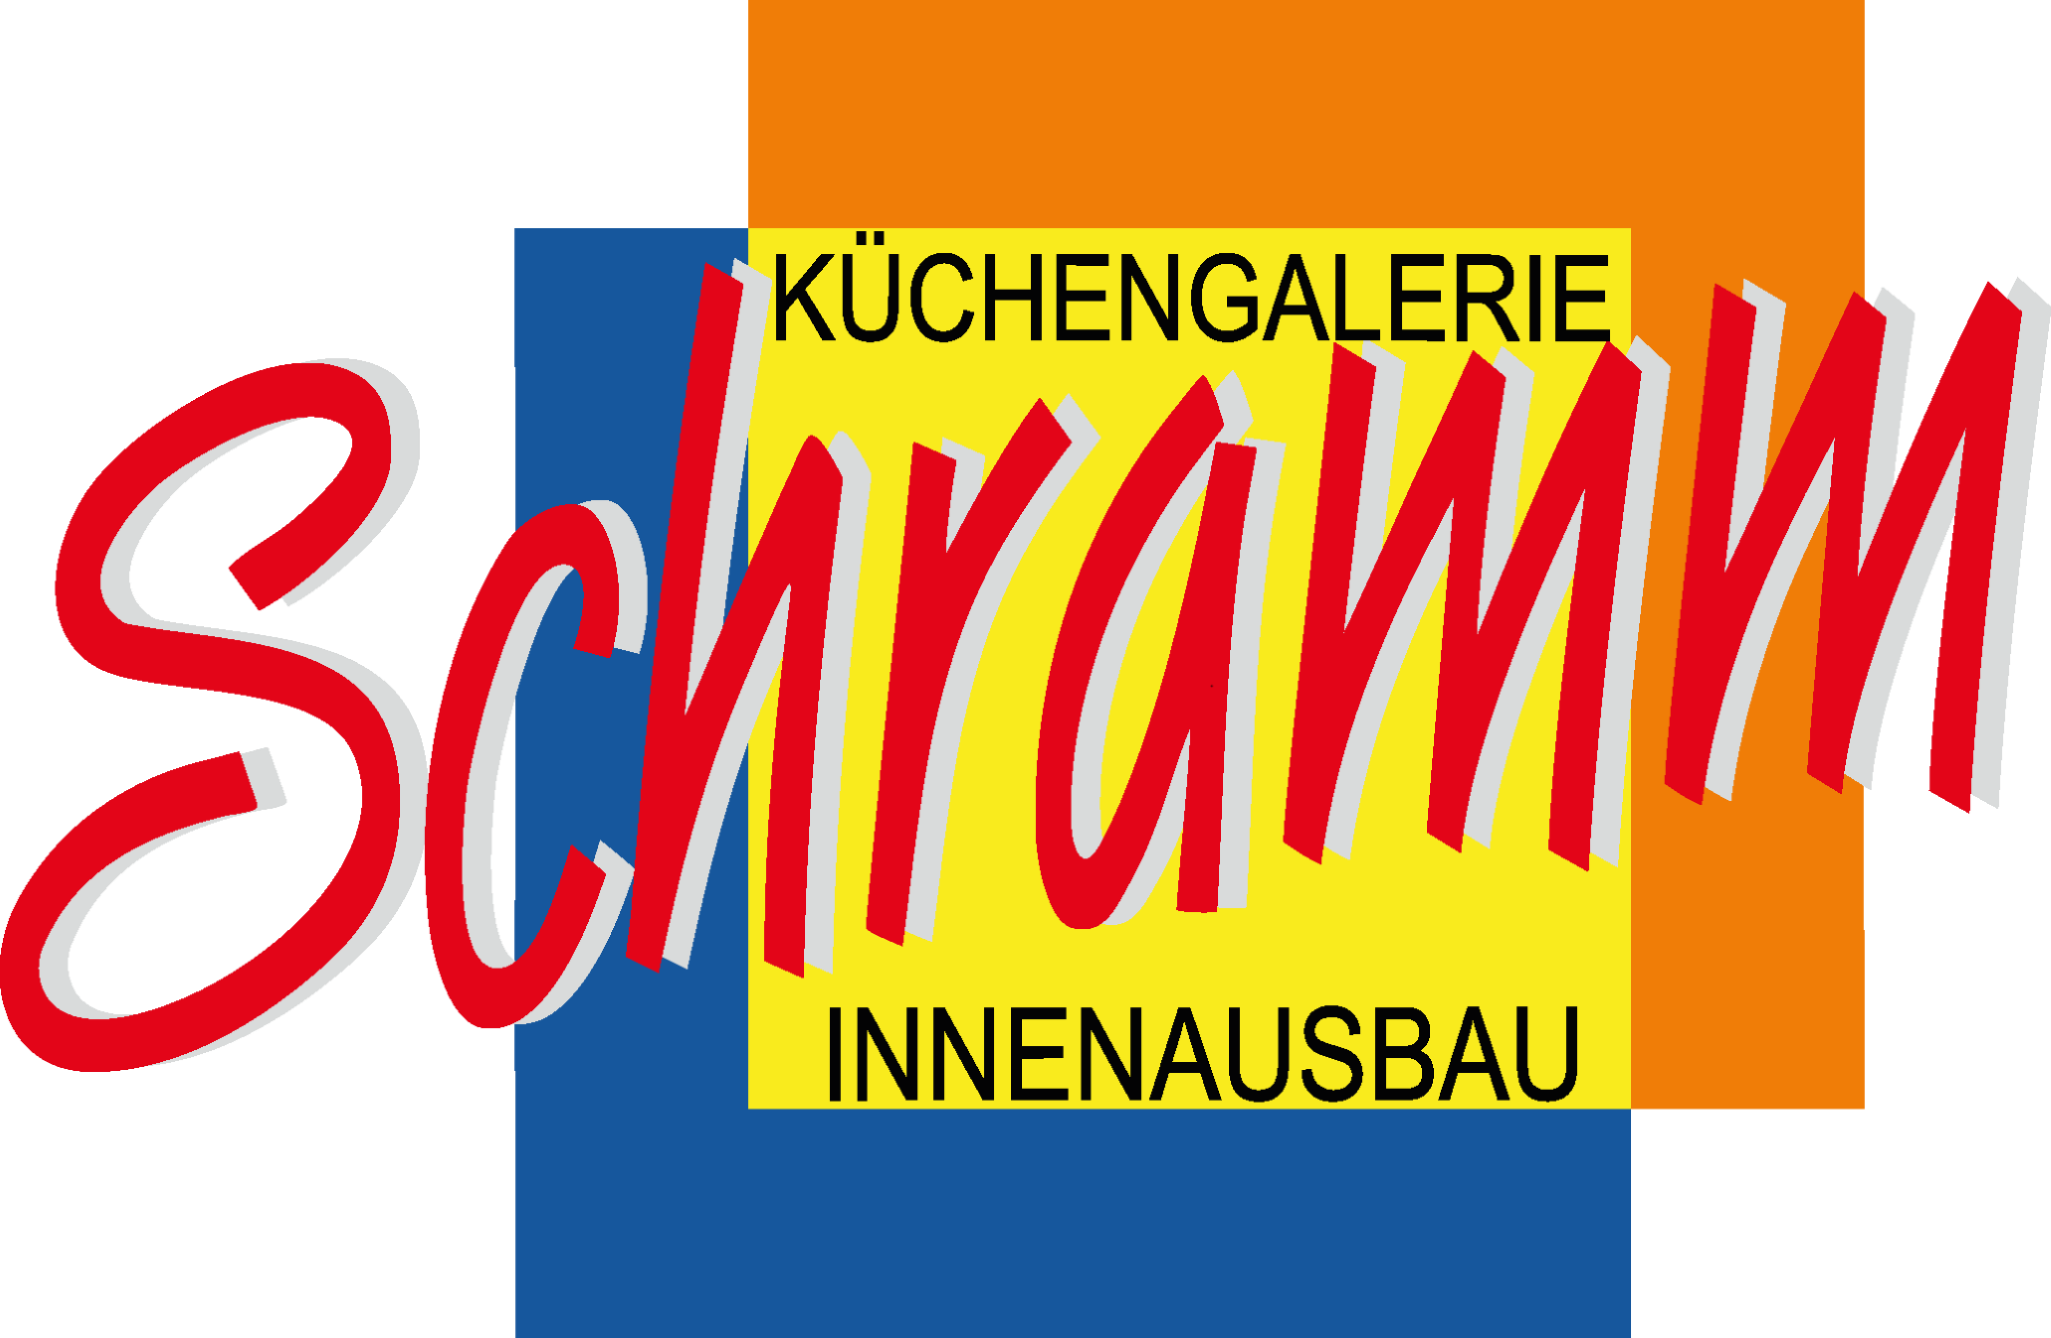 Schramm Küchengalerie & Innenausbau